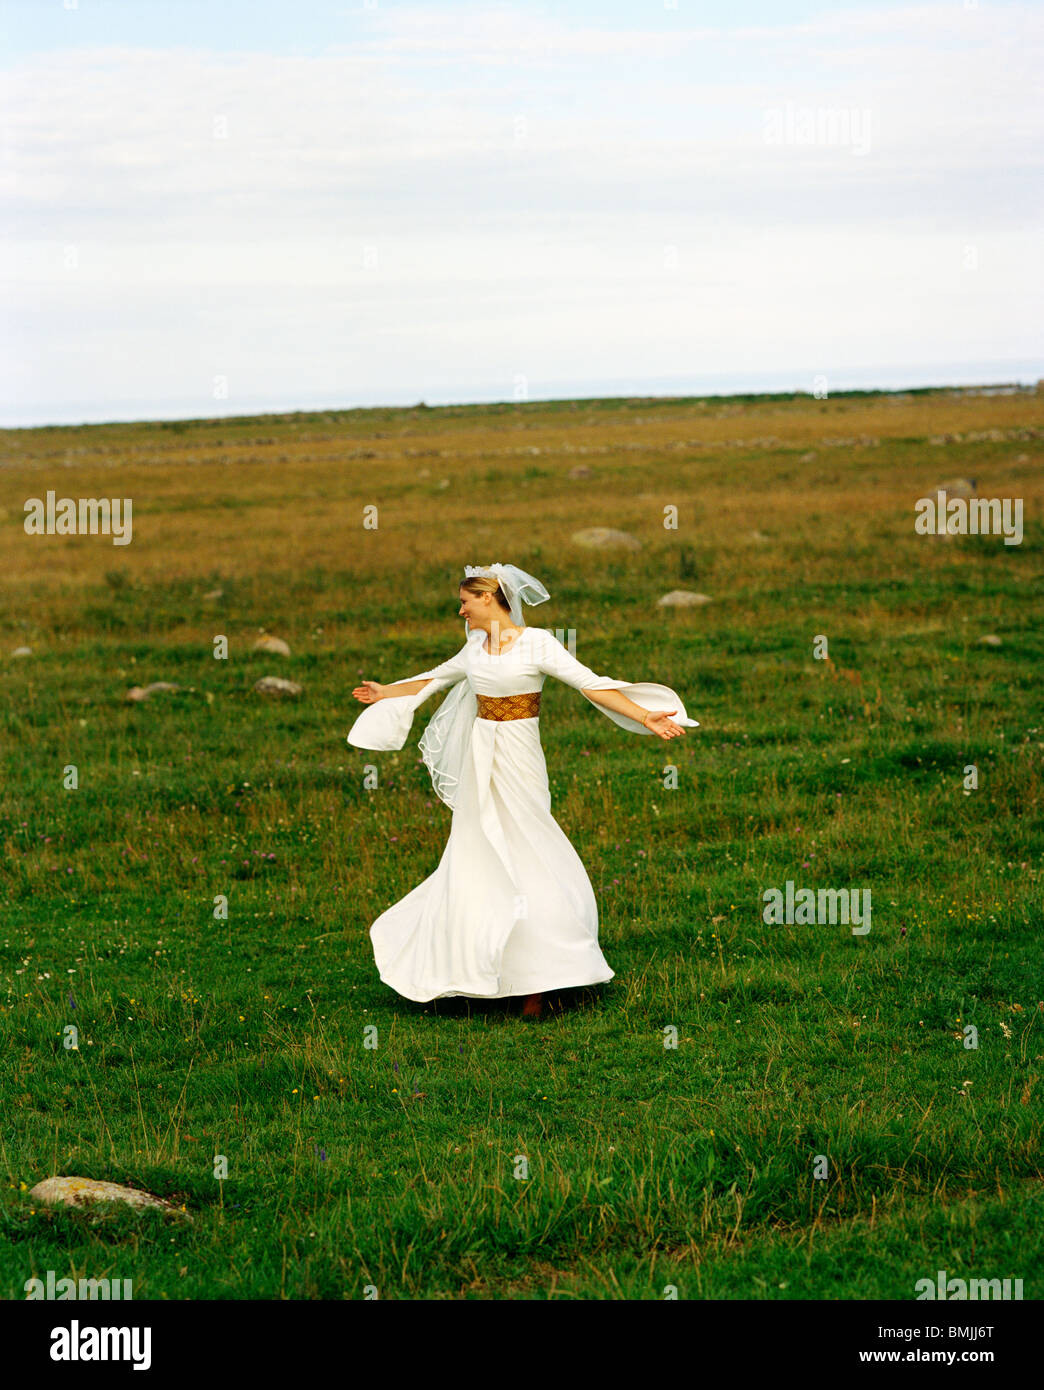 Scandinavia, Sweden, Oland, Bride dancing in field Stock Photo